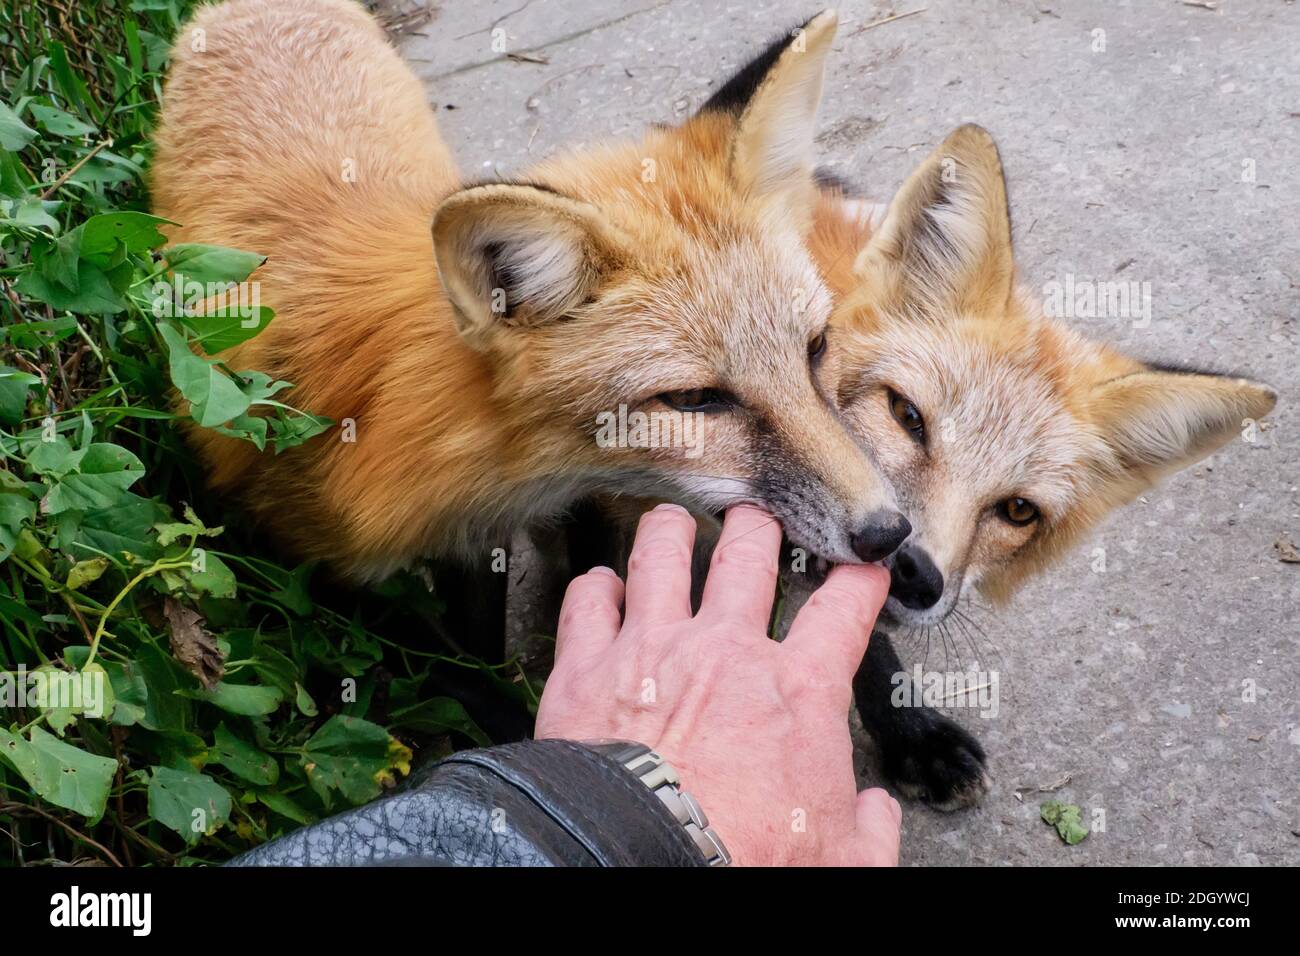 Des renards tamés jouant avec la main de l'homme Banque D'Images